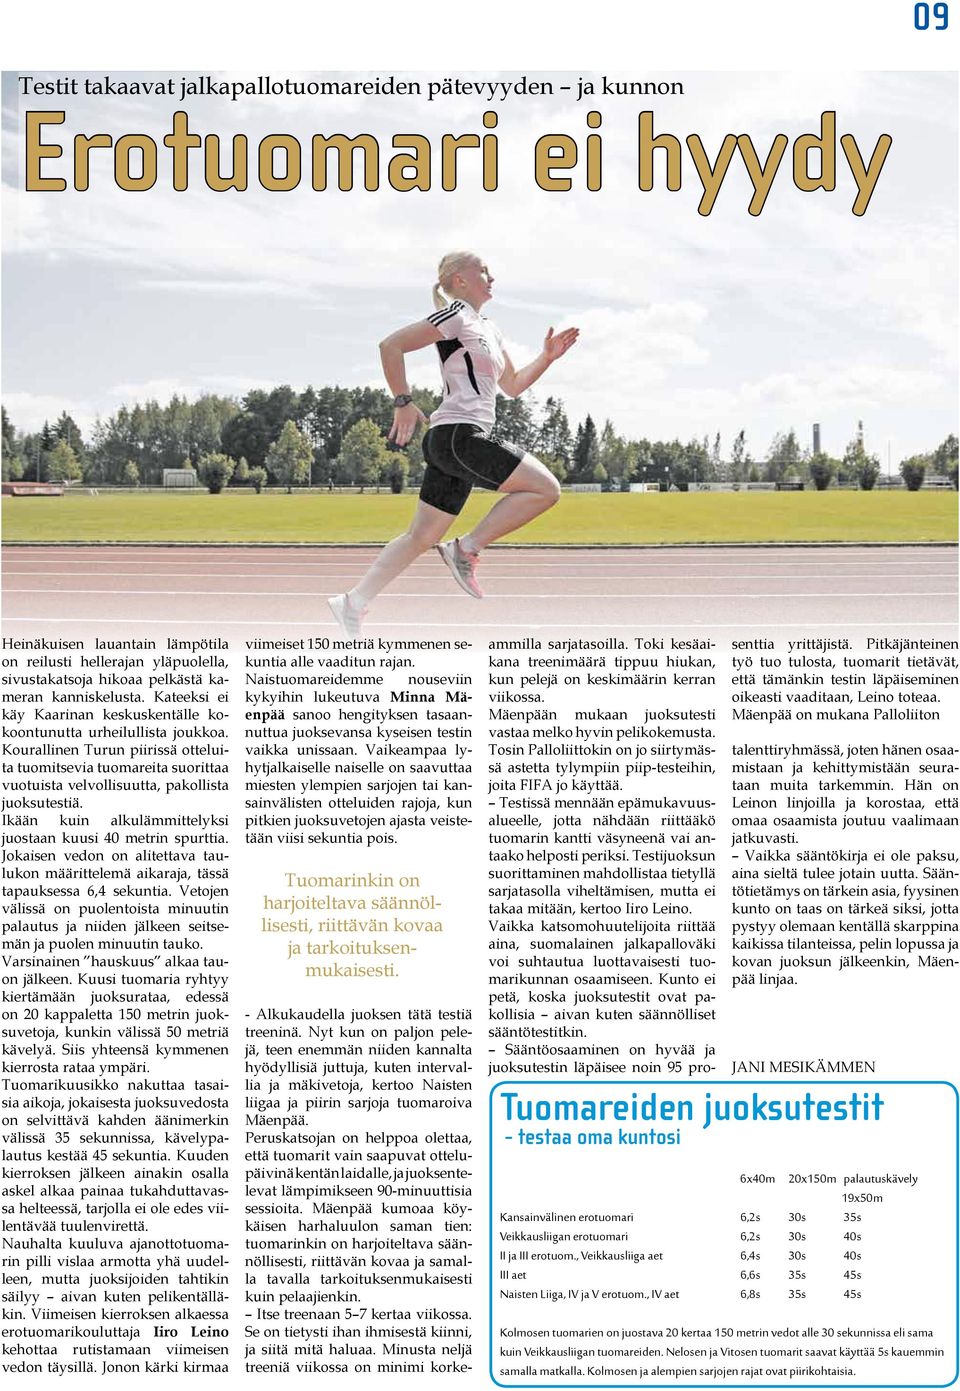 Kourallinen Turun piirissä otteluita tuomitsevia tuomareita suorittaa vuotuista velvollisuutta, pakollista juoksutestiä. Ikään kuin alkulämmittelyksi juostaan kuusi 40 metrin spurttia.